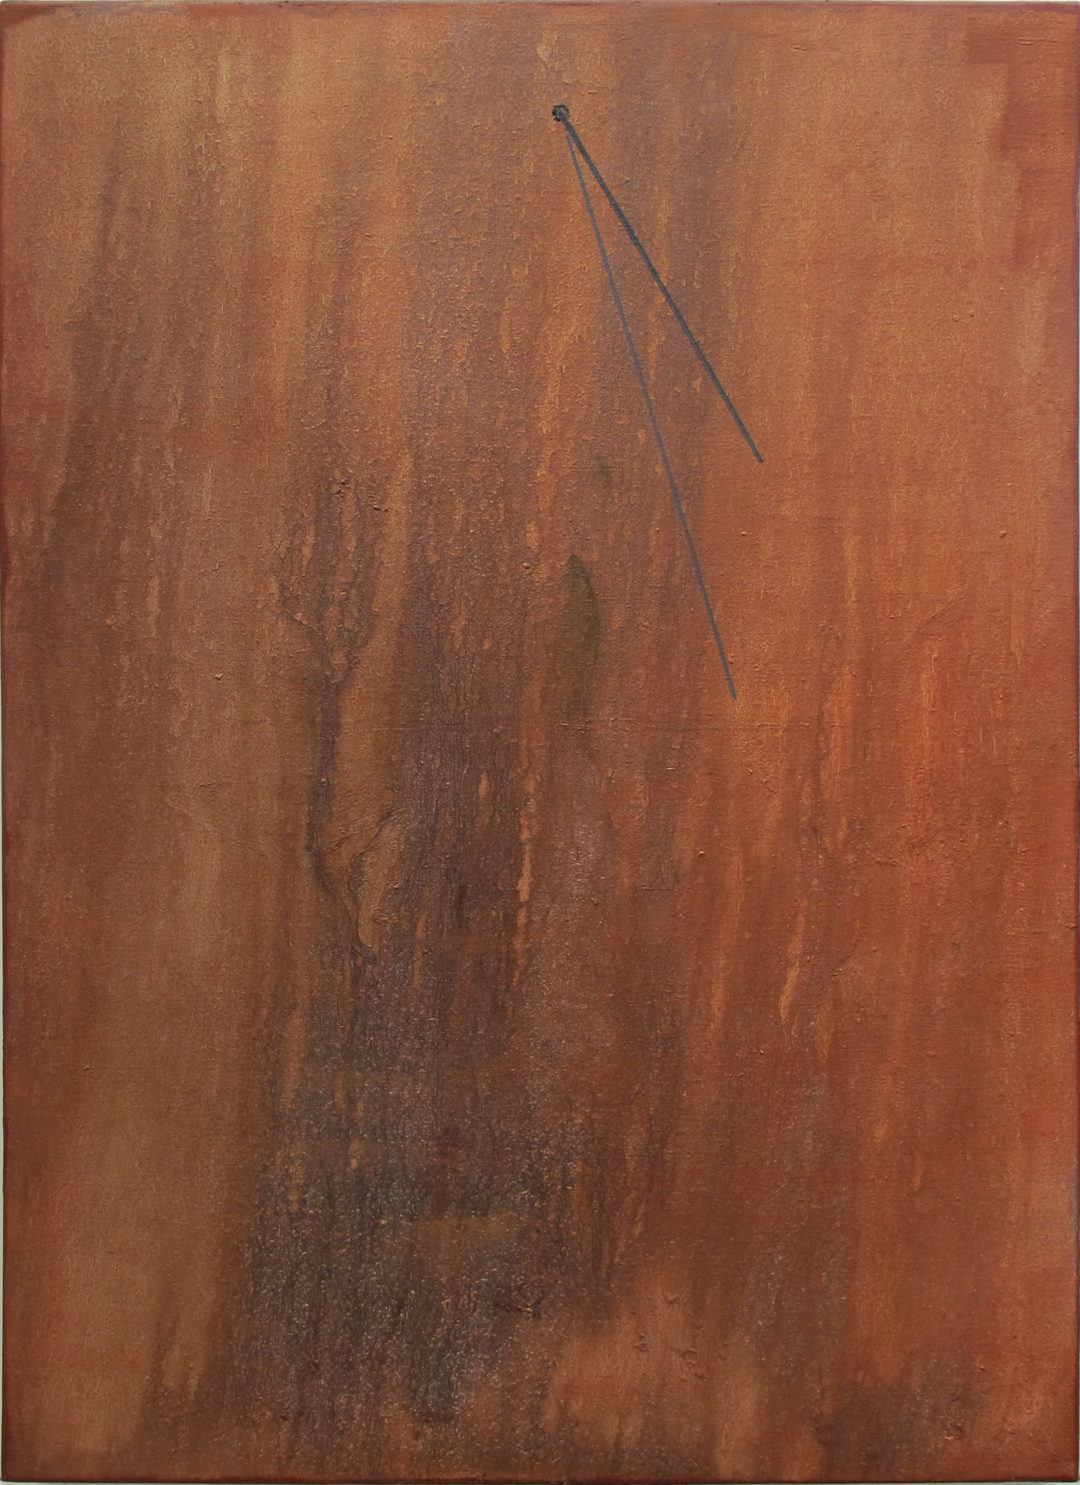 Benoît Blanchard, Index, huile sur toile, 81 x 60 cm, 2019